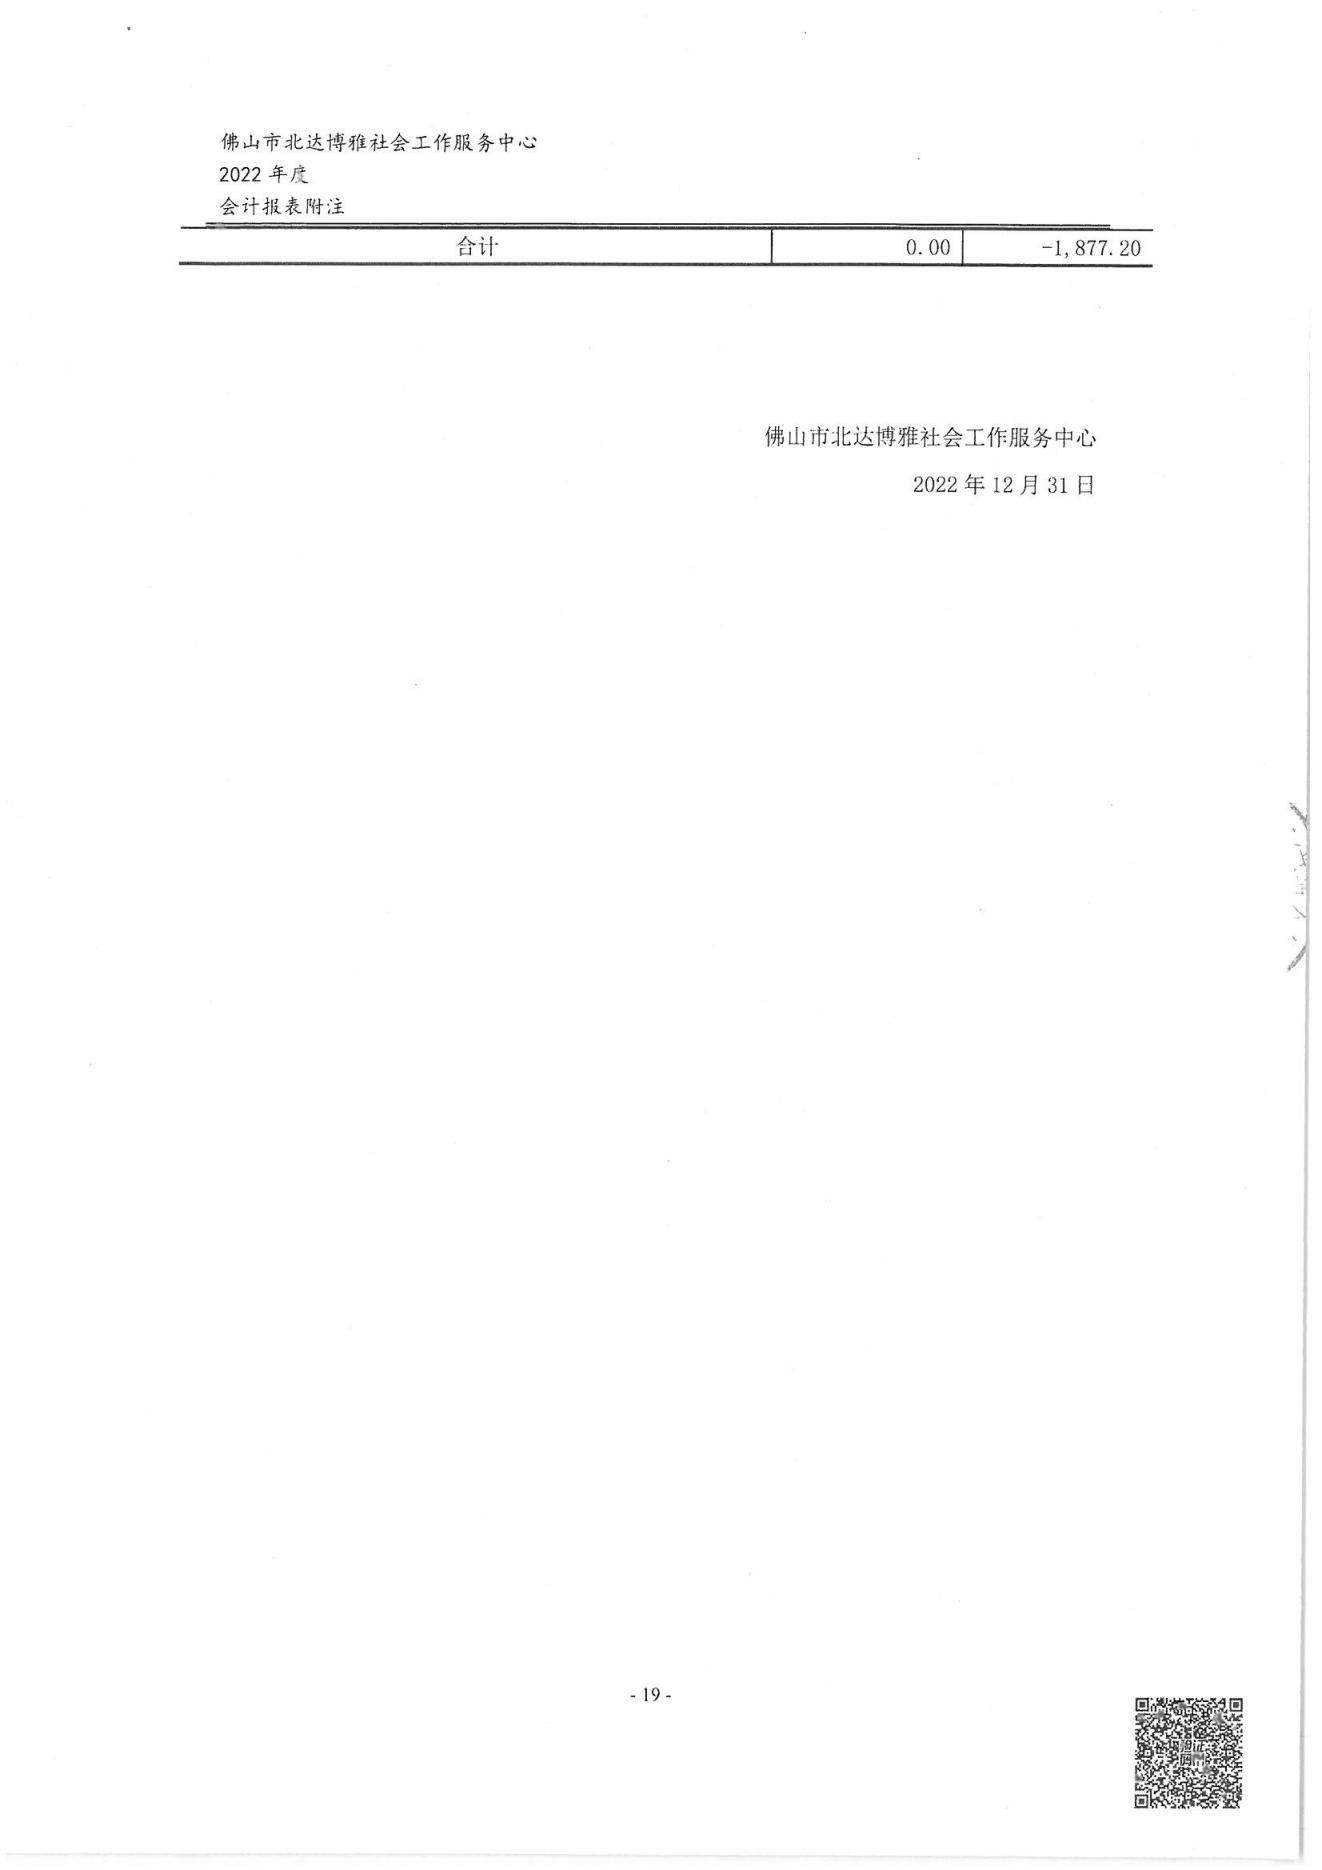 佛山博雅2022年度审计报告_20.jpg